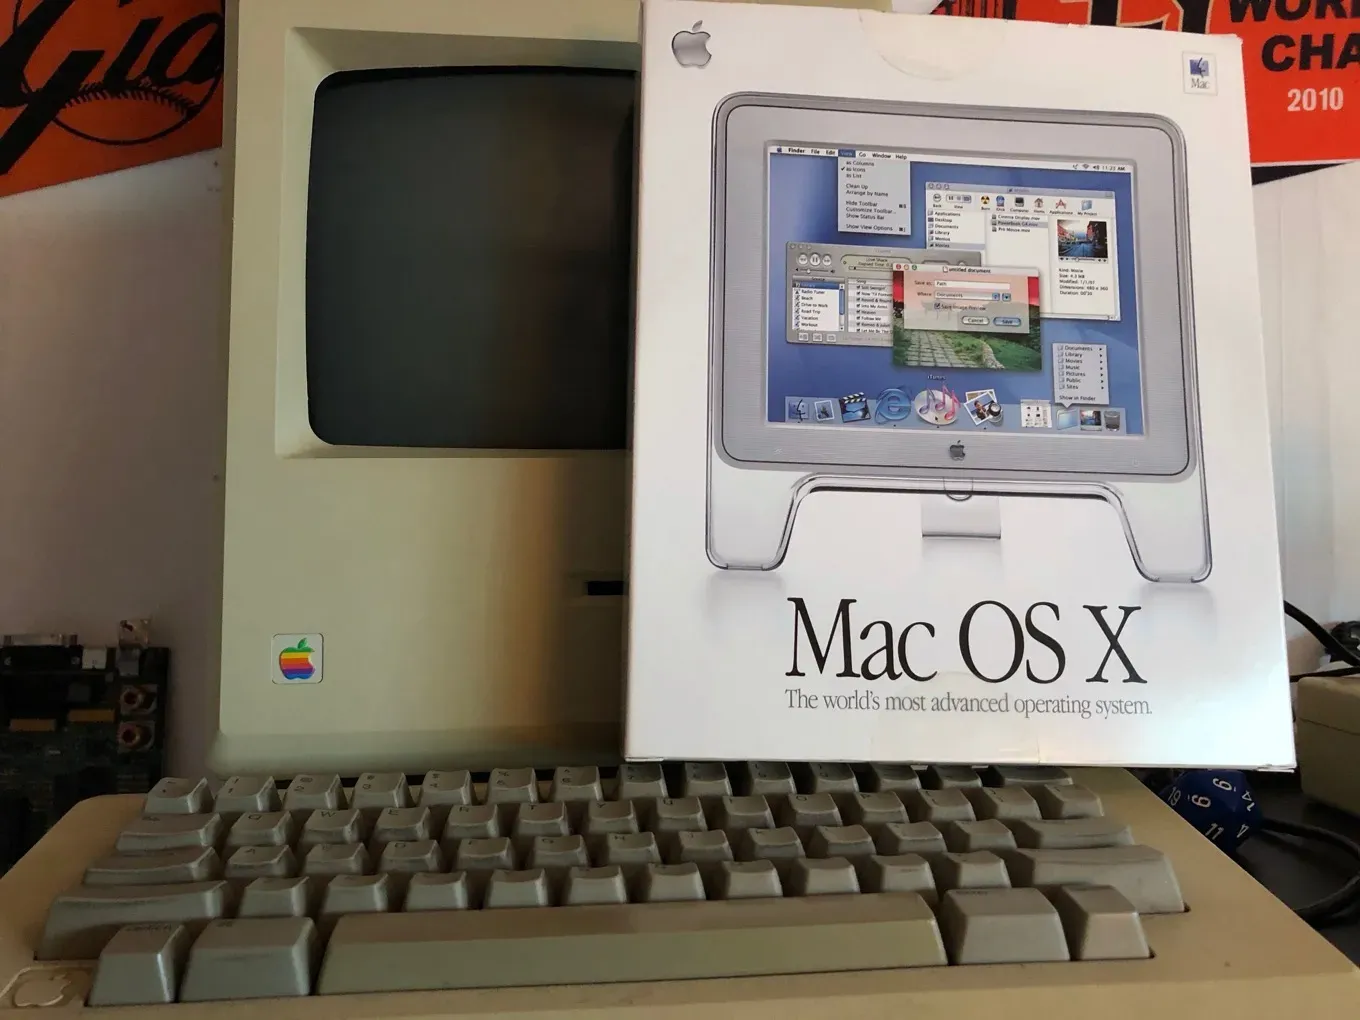 Этот день в истории Apple: представлена революционная операционная система Mac OS X